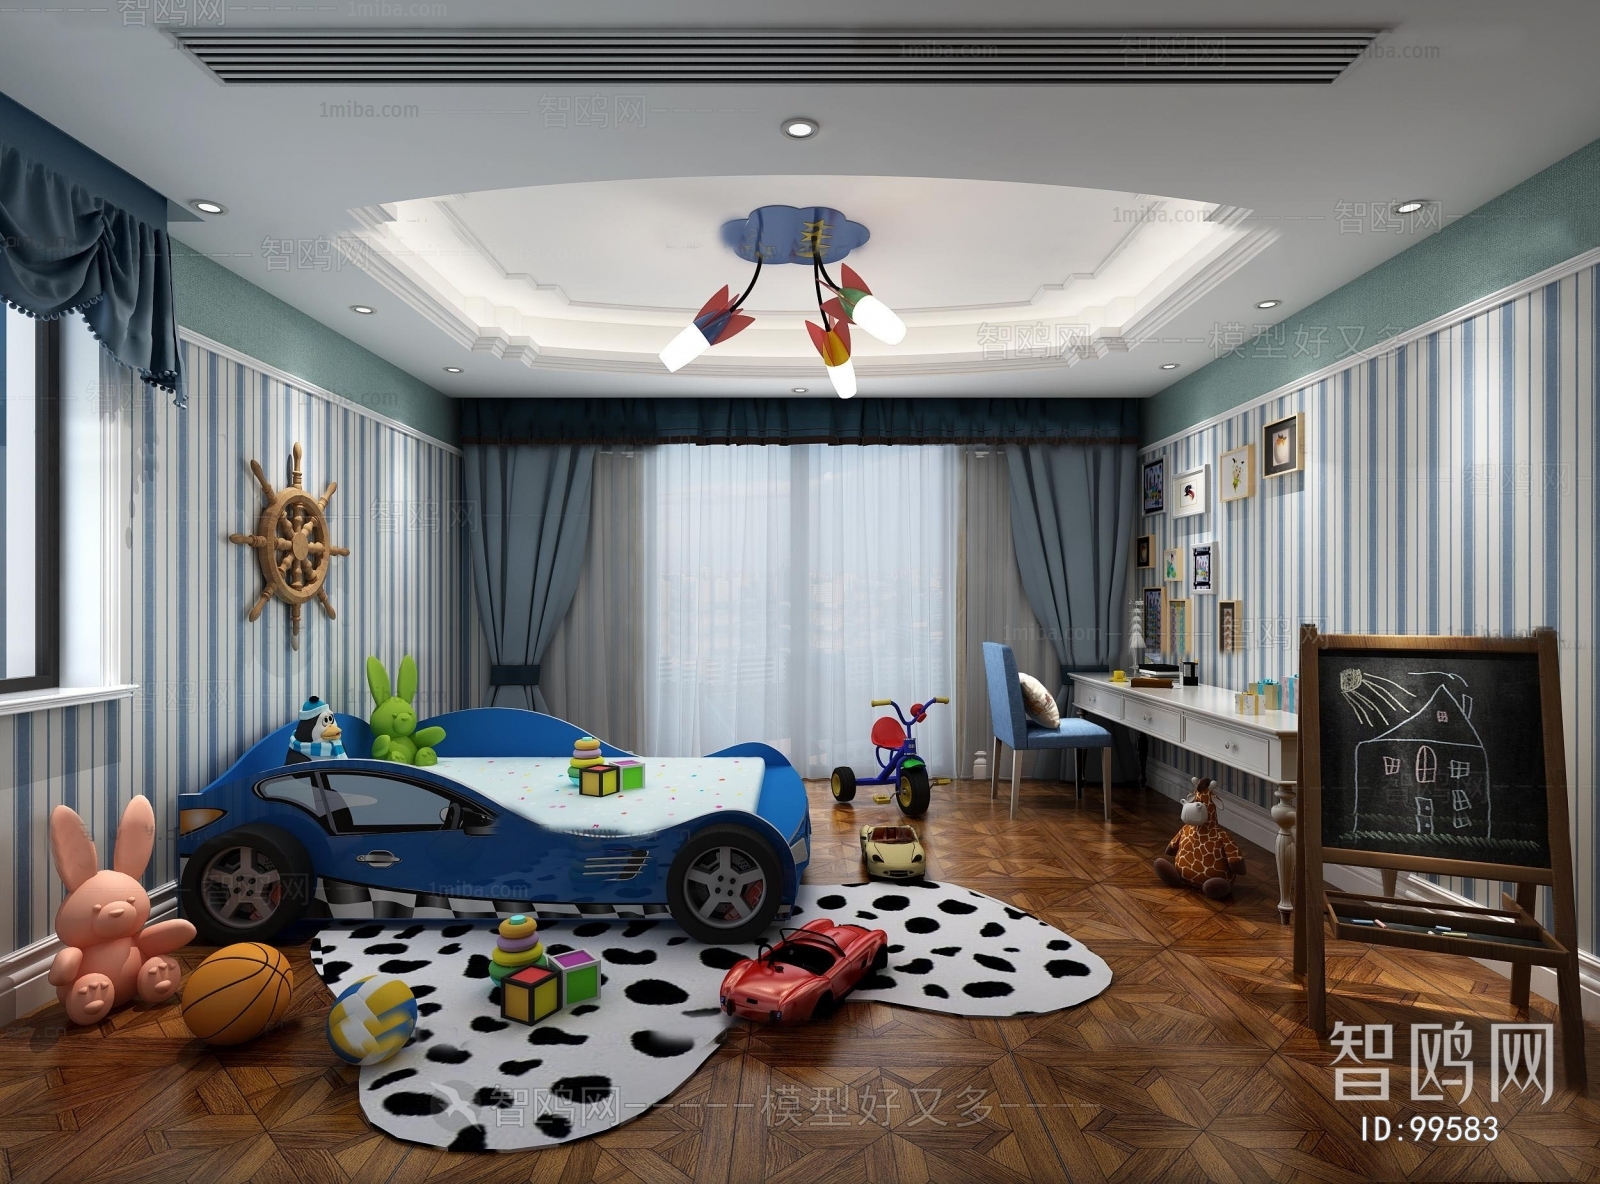 Mediterranean Style Children's Room